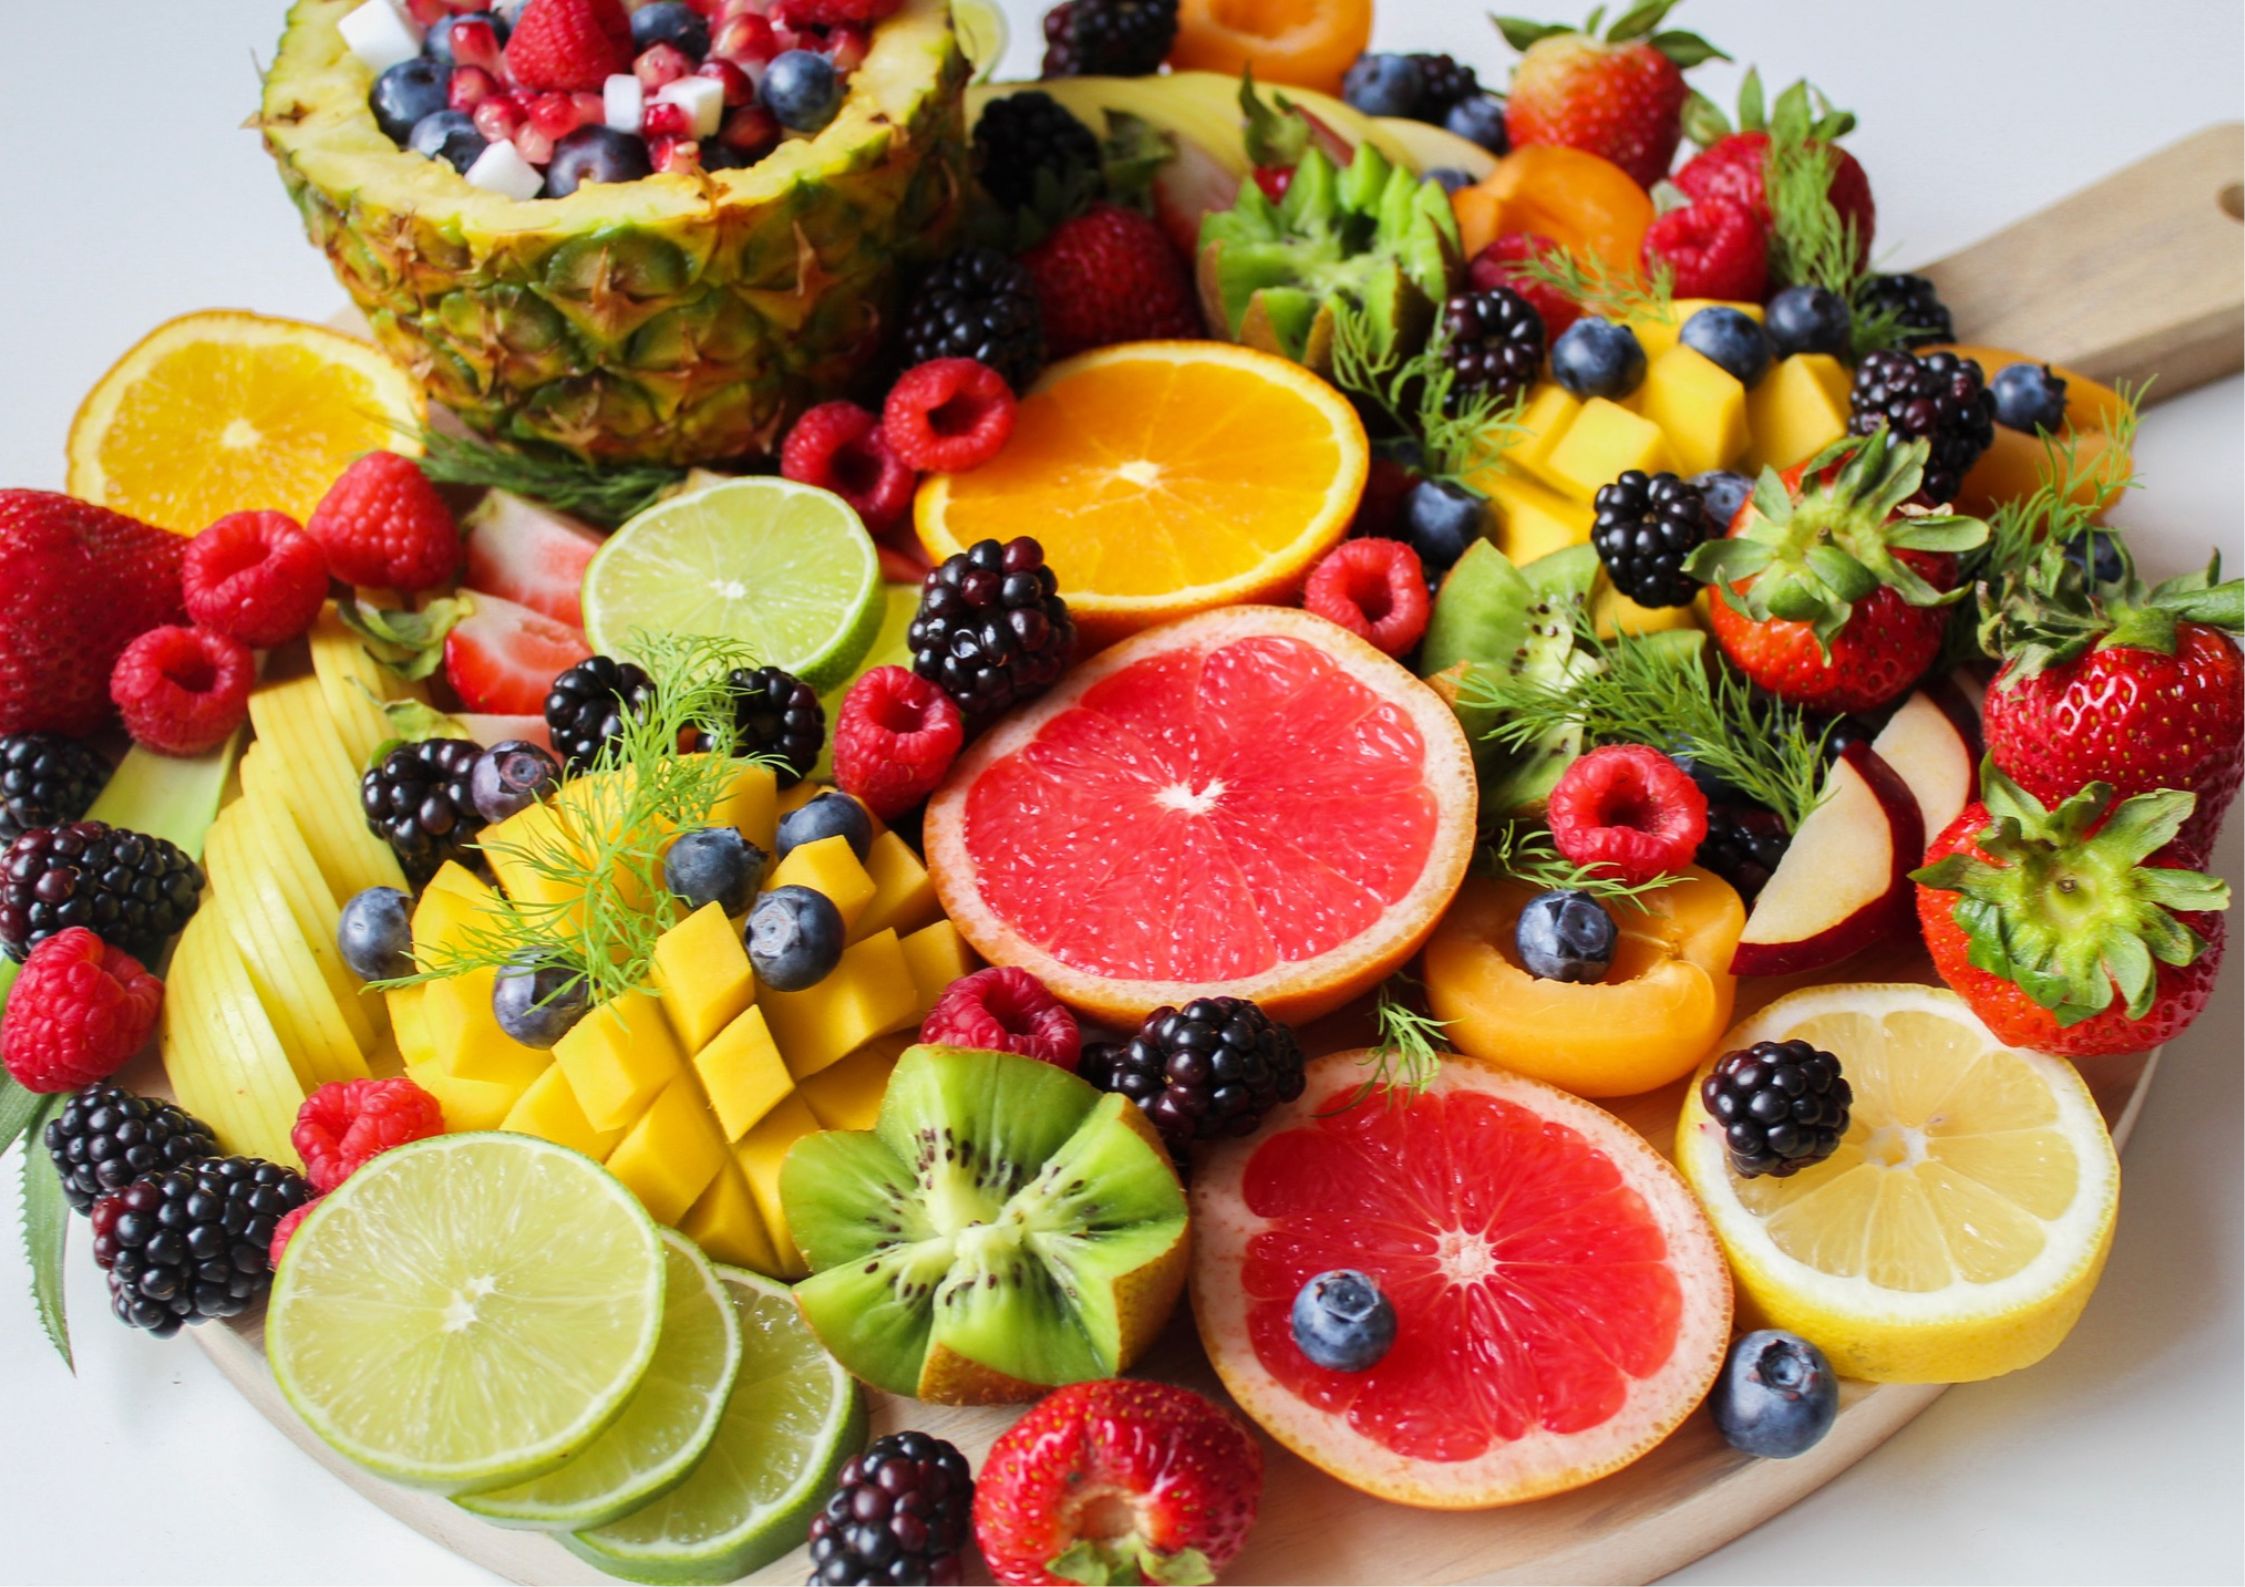 みんな大好き果物！ダイエット中は食べる量や種類に注意する必要があります！page-visual みんな大好き果物！ダイエット中は食べる量や種類に注意する必要があります！ビジュアル